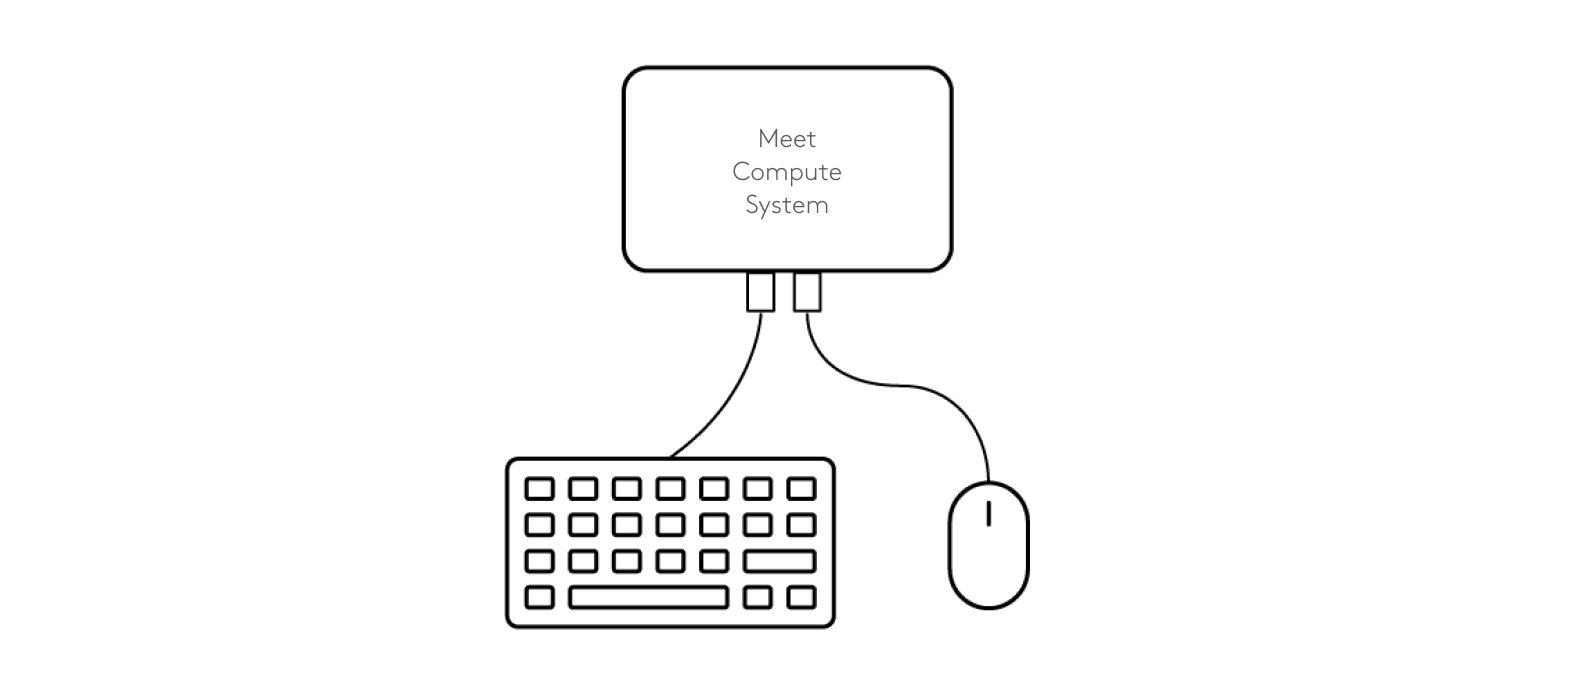 Diagram menghubungkan keyboard dan mouse ke Sistem Komputasi Meet